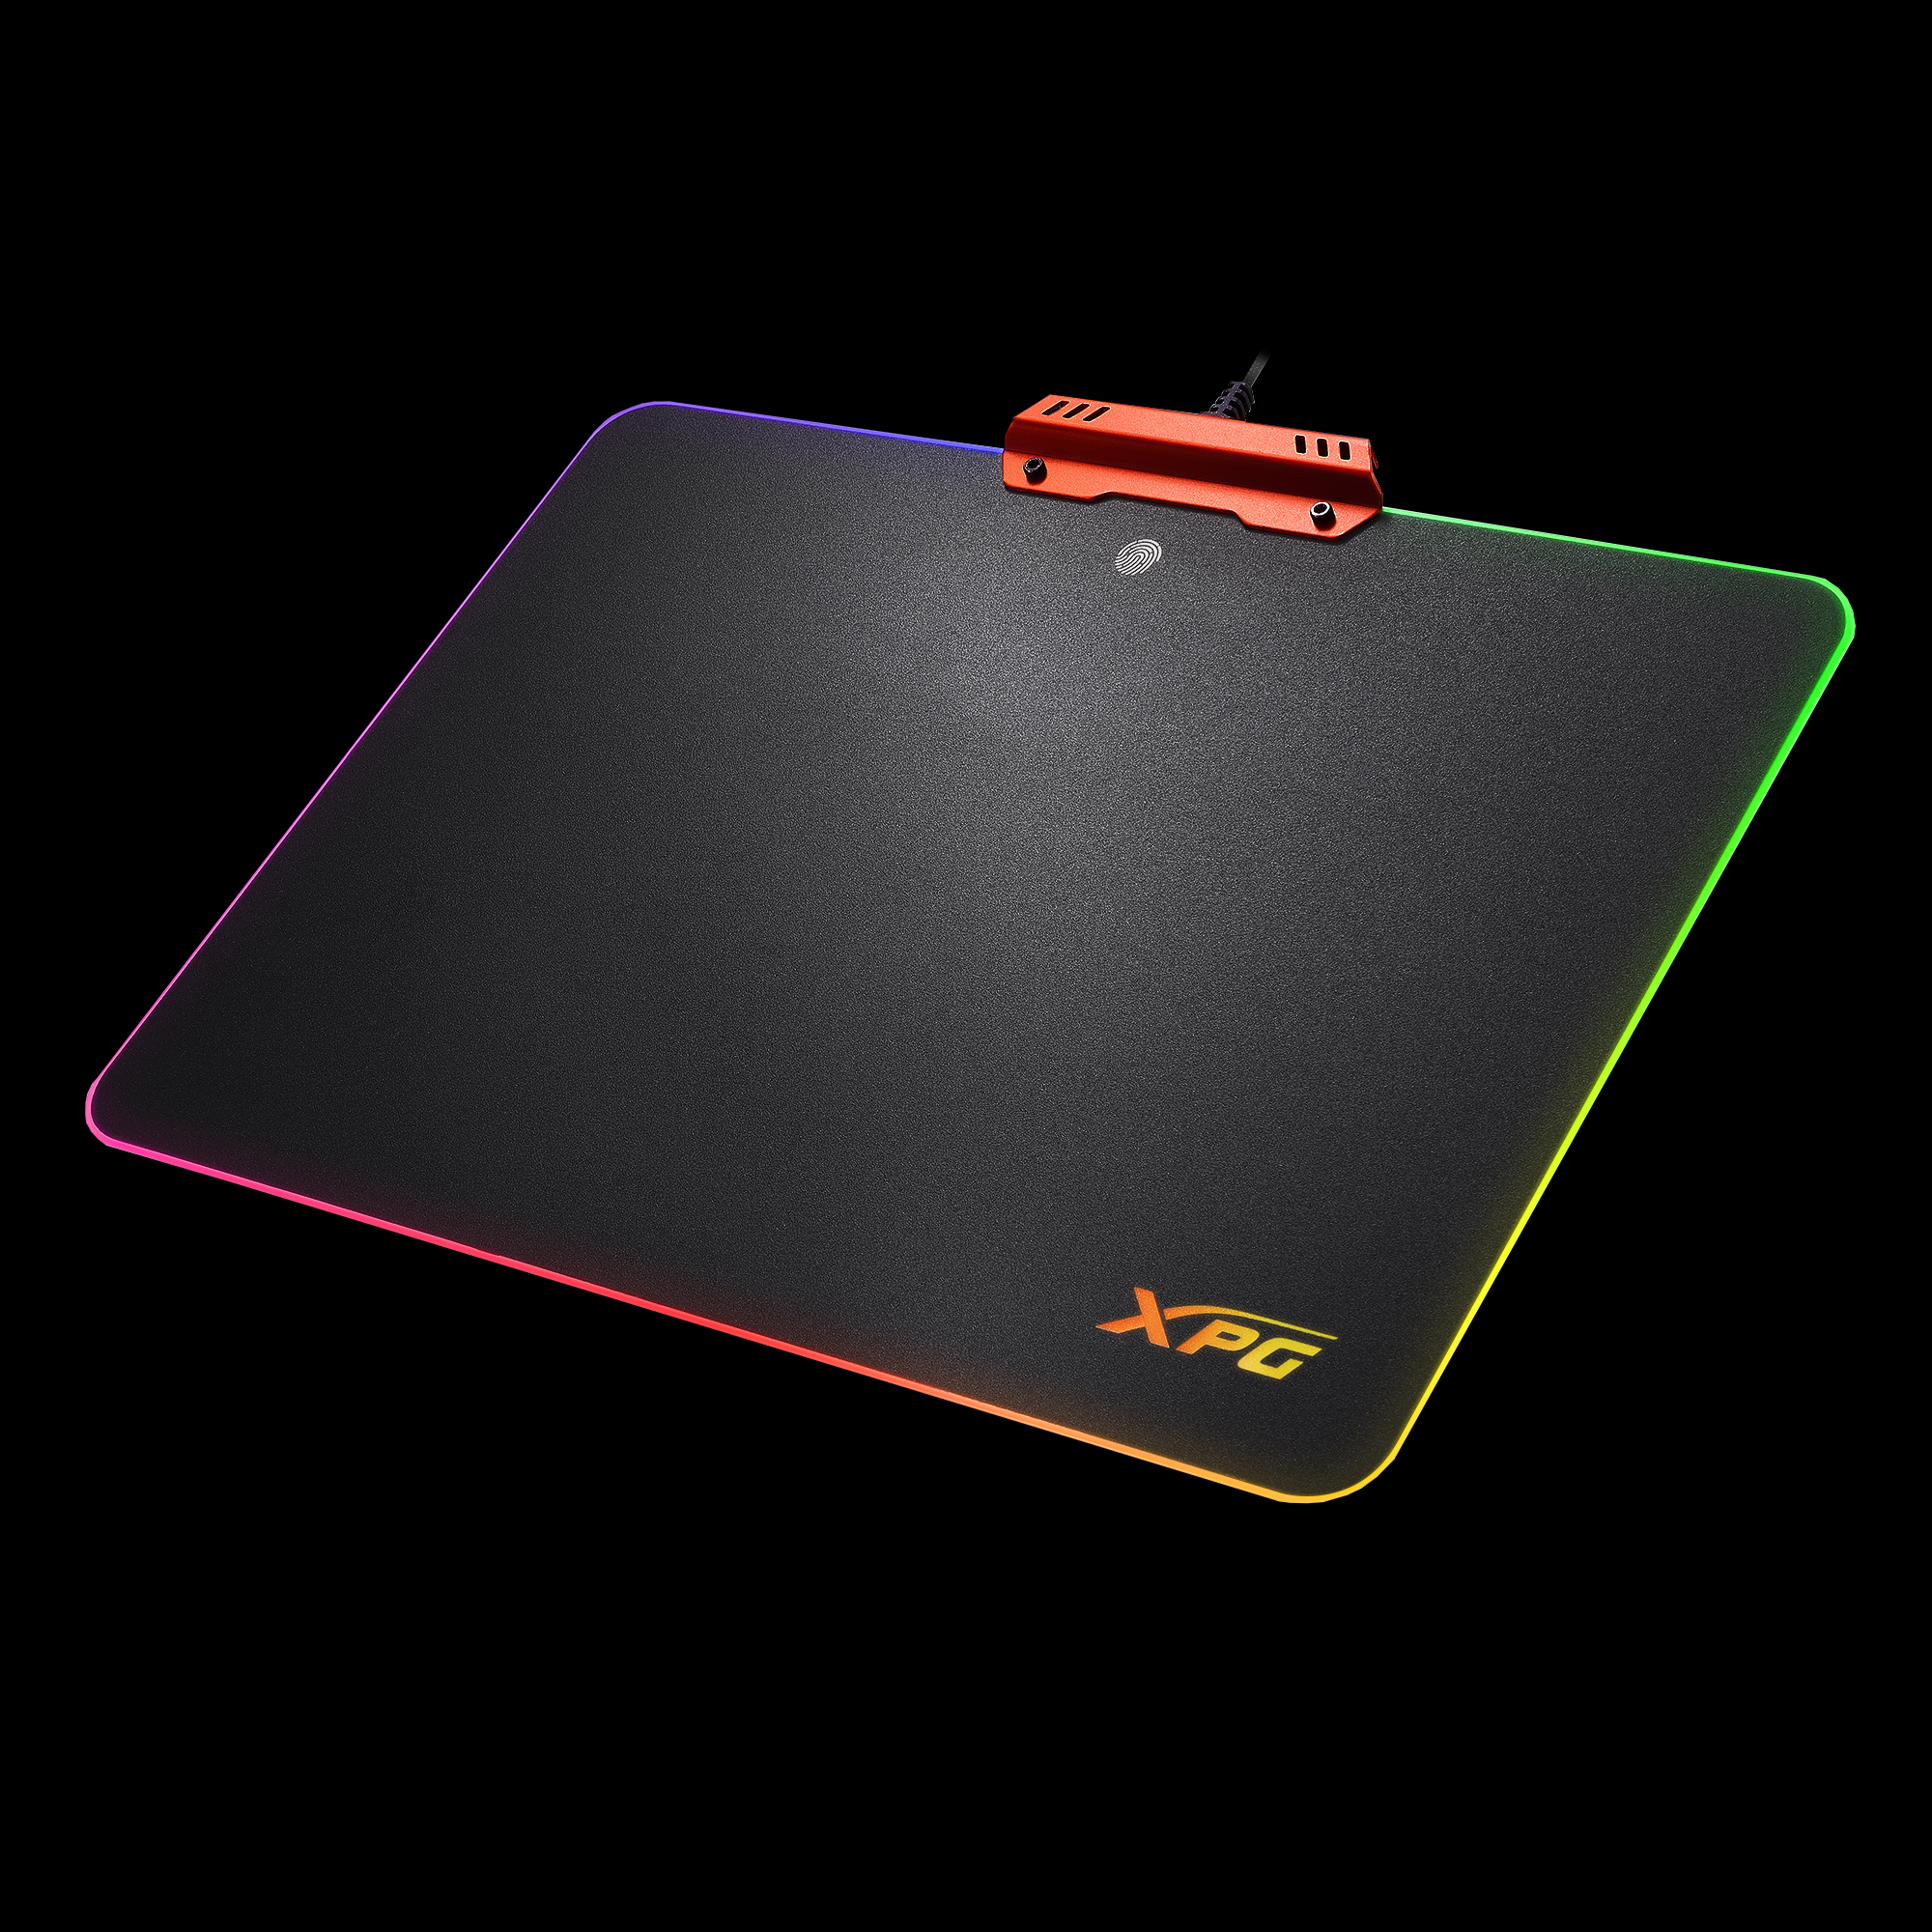 XPG INFAREX R10 RGB電競硬板滑鼠墊